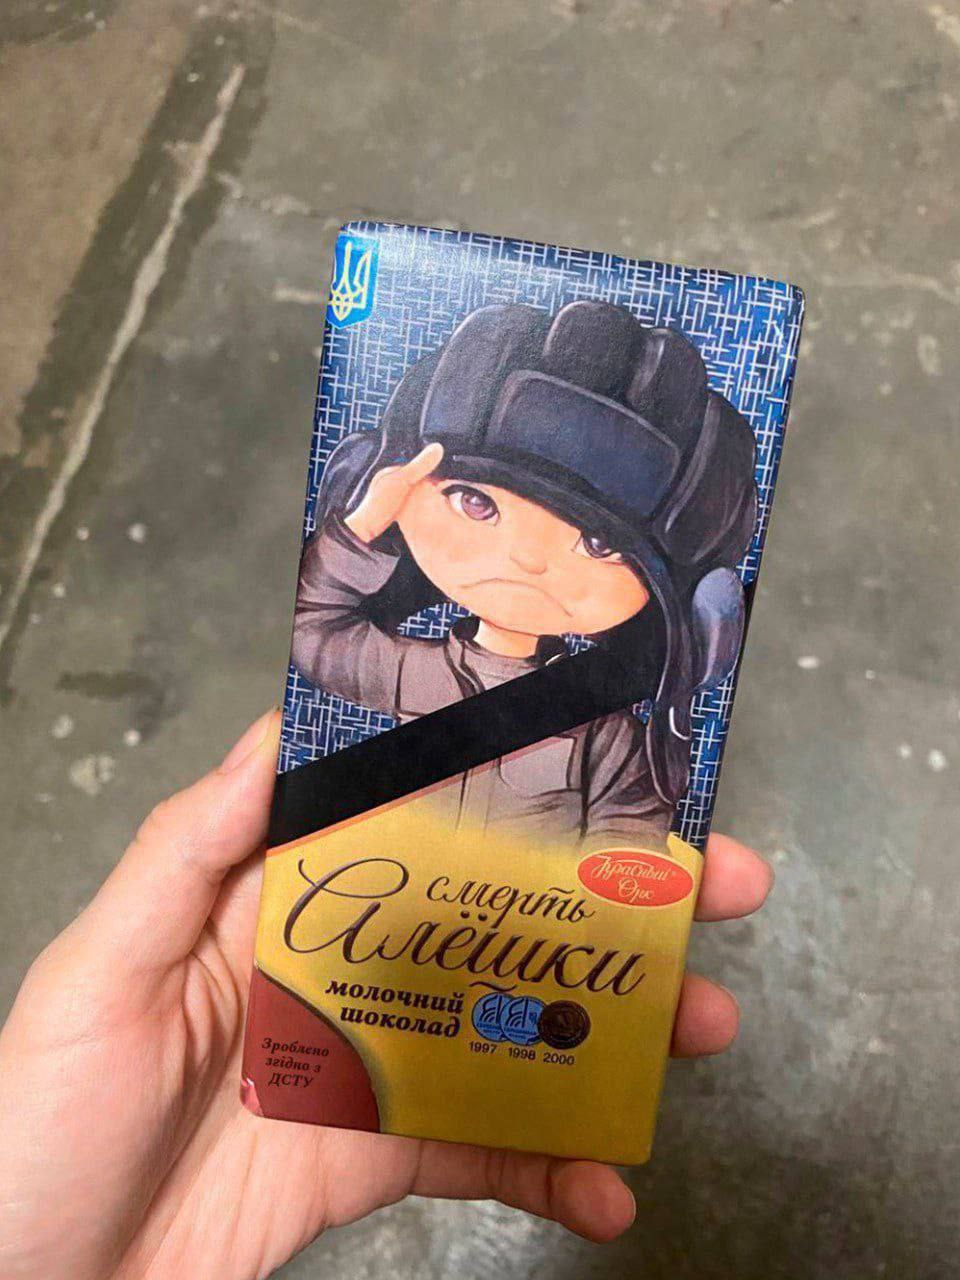 «Украина пробивает дно»: на полках киевских магазинов появился шоколад «Смерть Алешки»